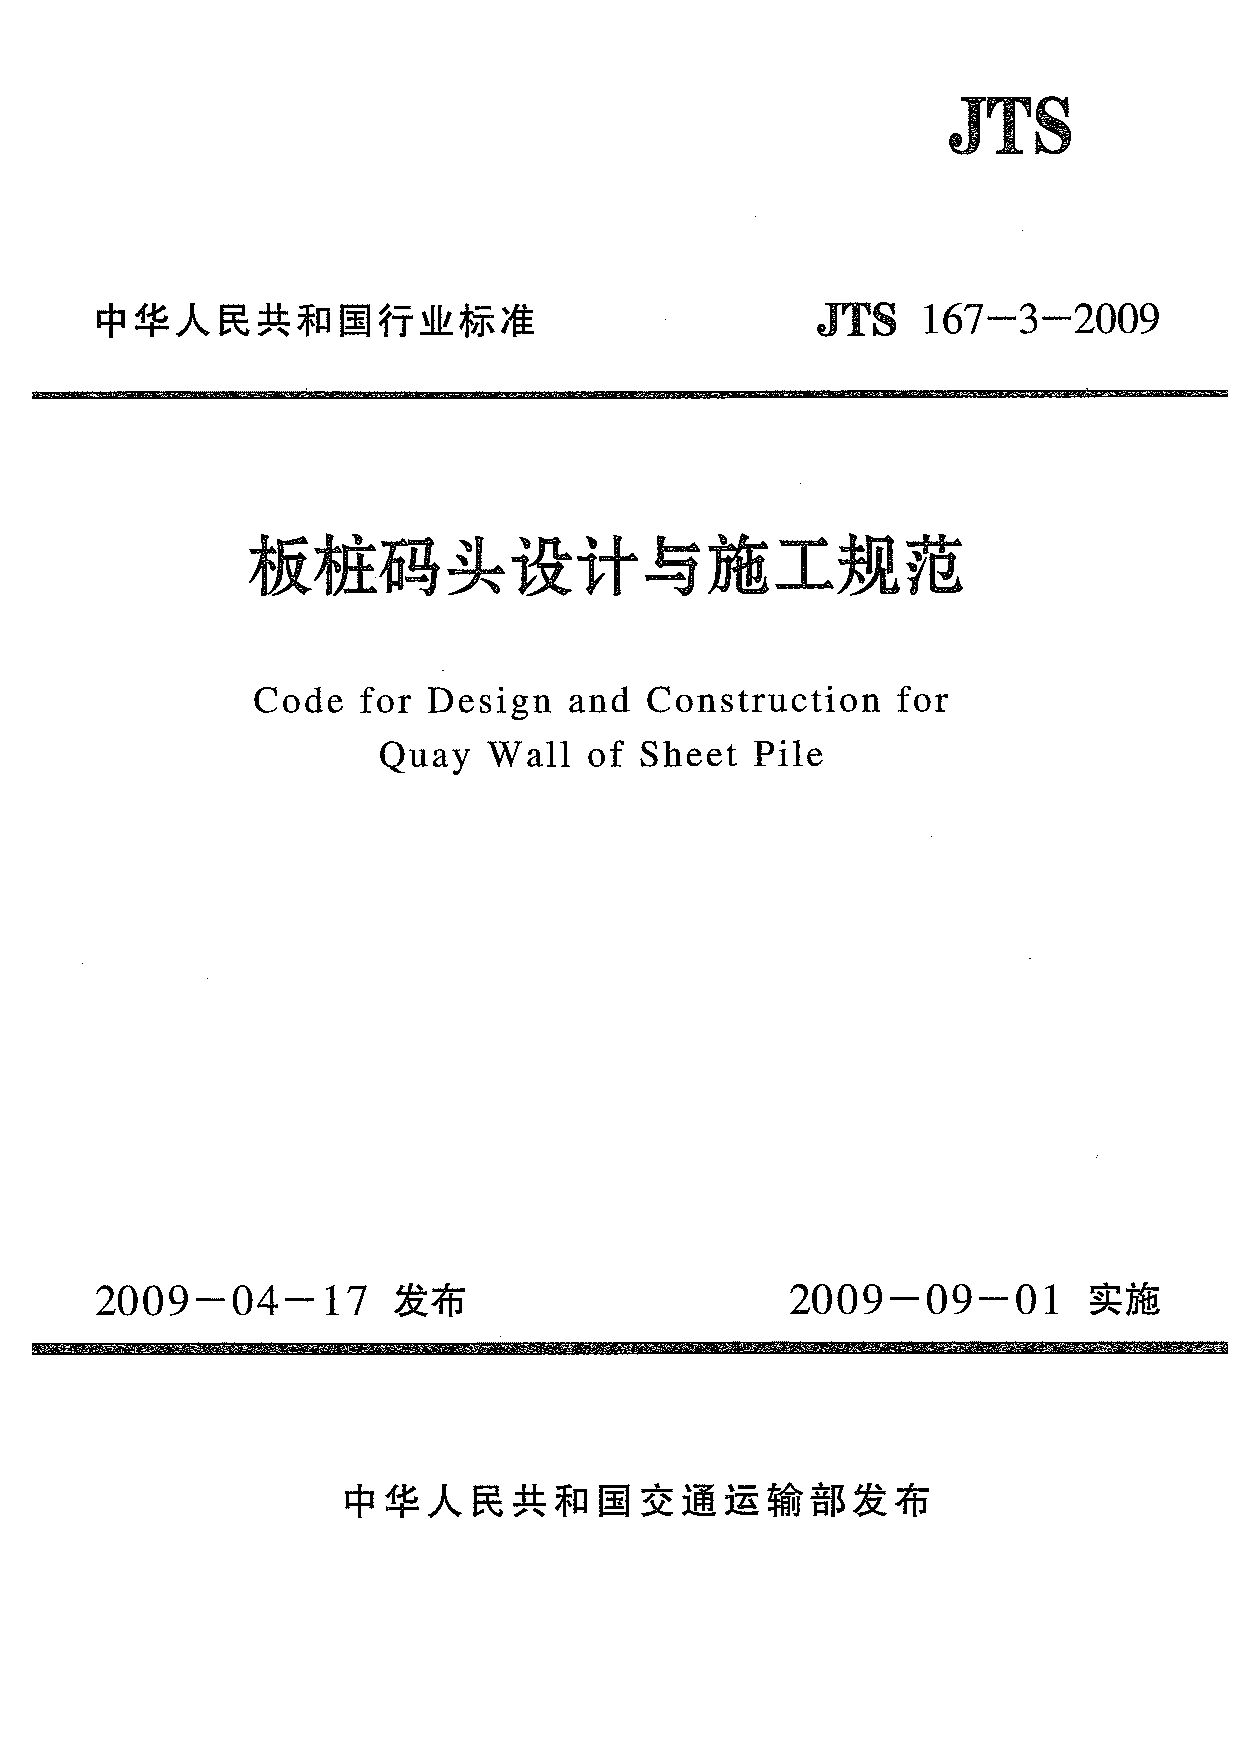 JTS 167-3-2009